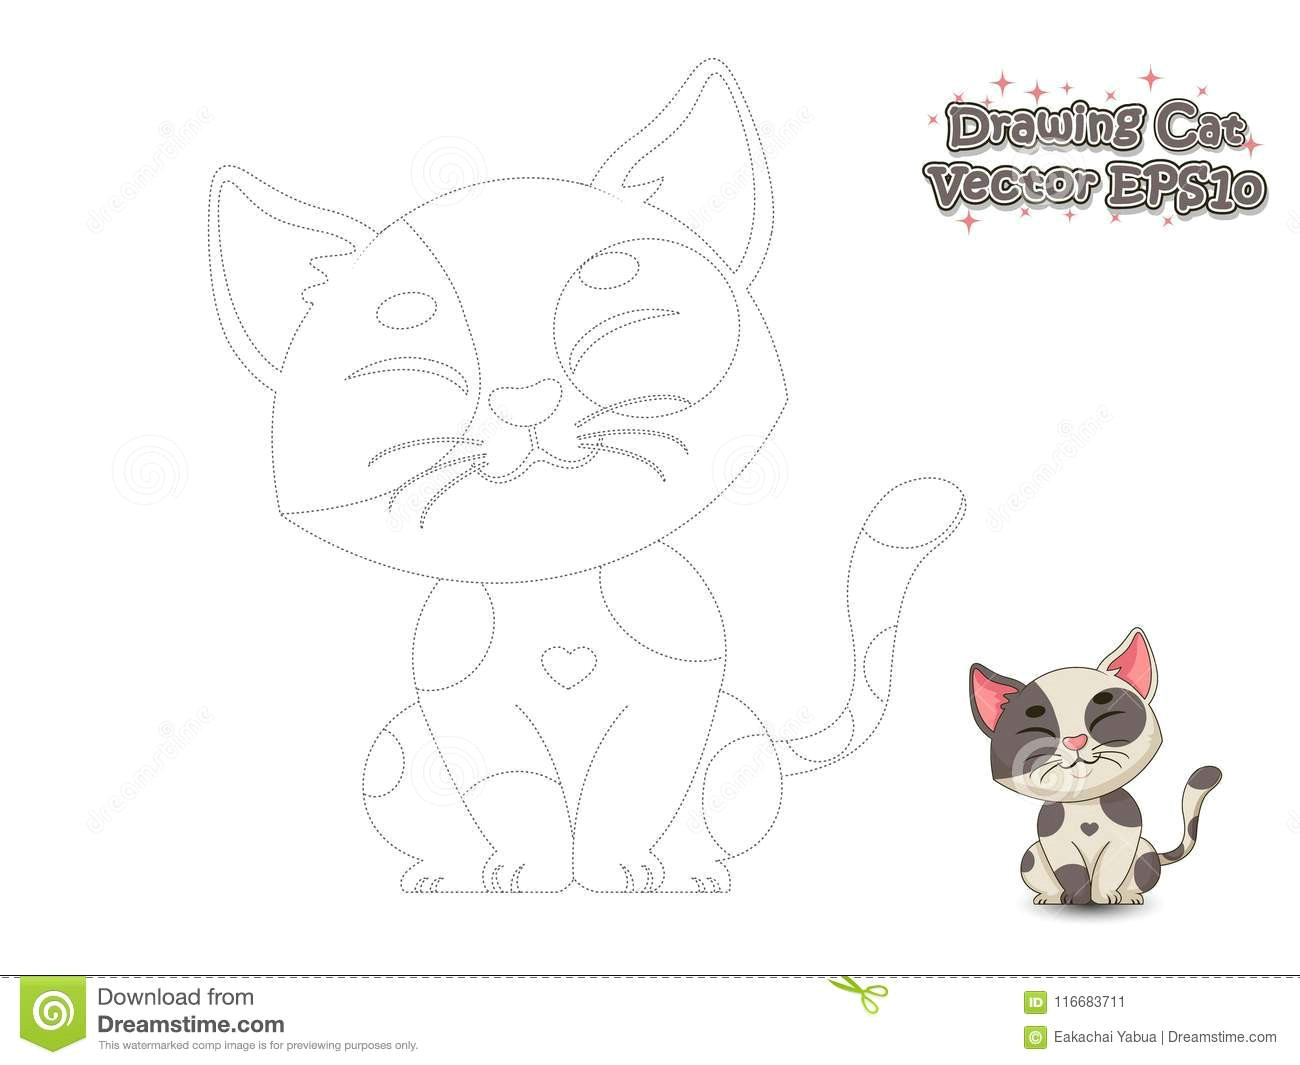 Drawing Cartoon Koala Drawing and Paint Cute Cartoon Cat Educational Game for Kids V